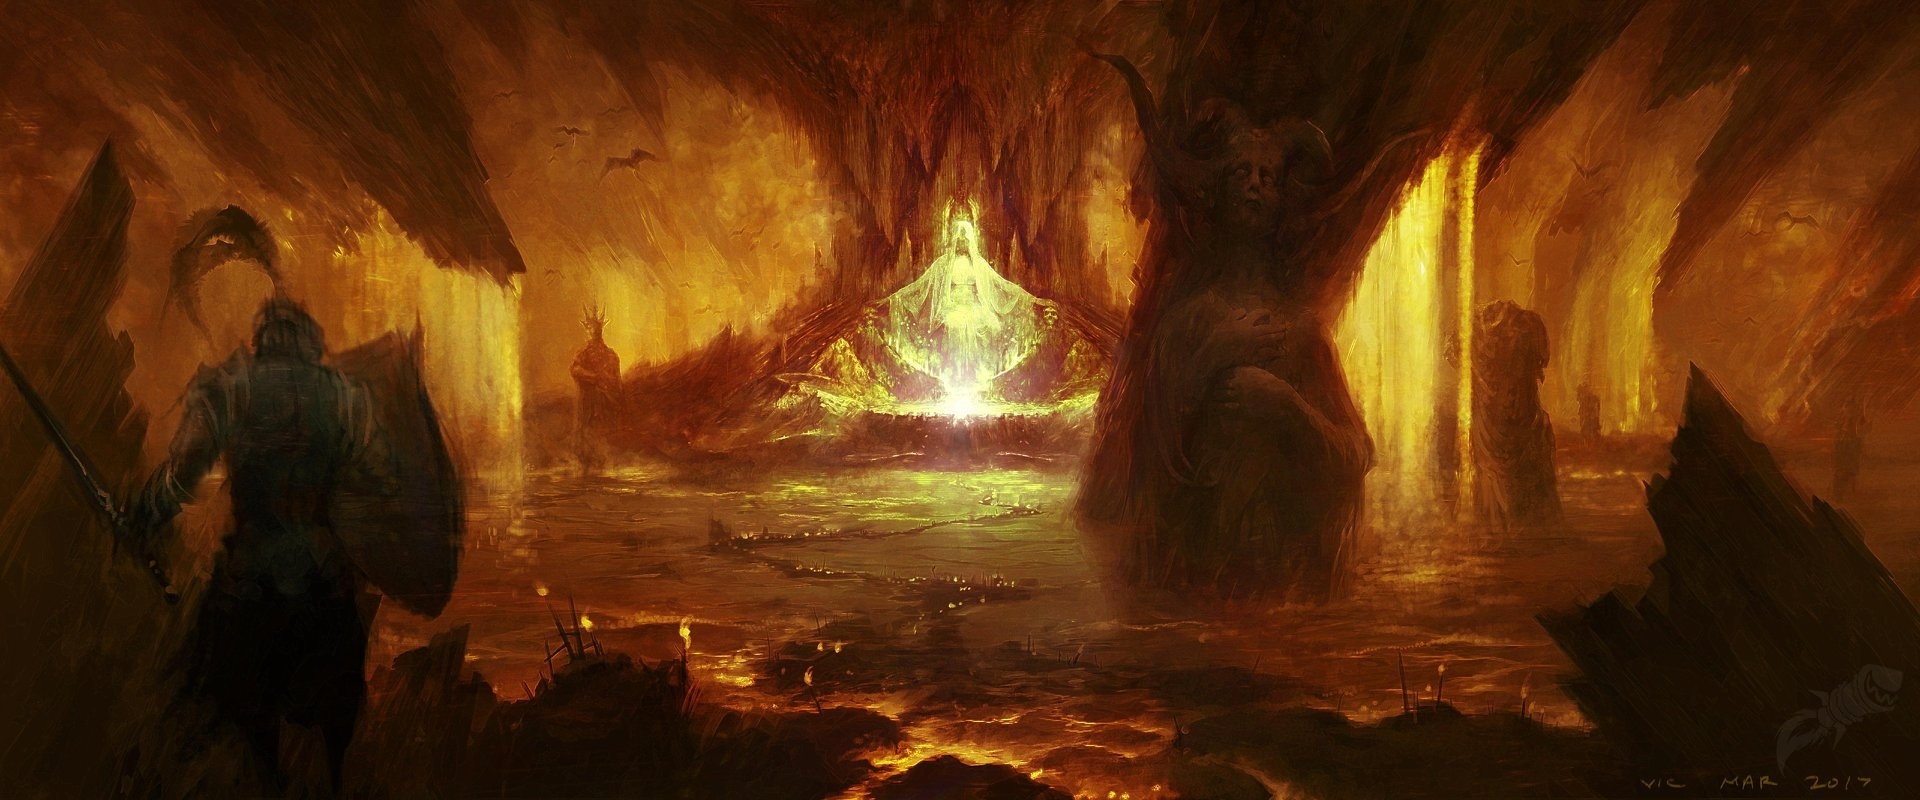 《暗黑破坏神4》概念艺术图及截图 场景壮观画风黑暗